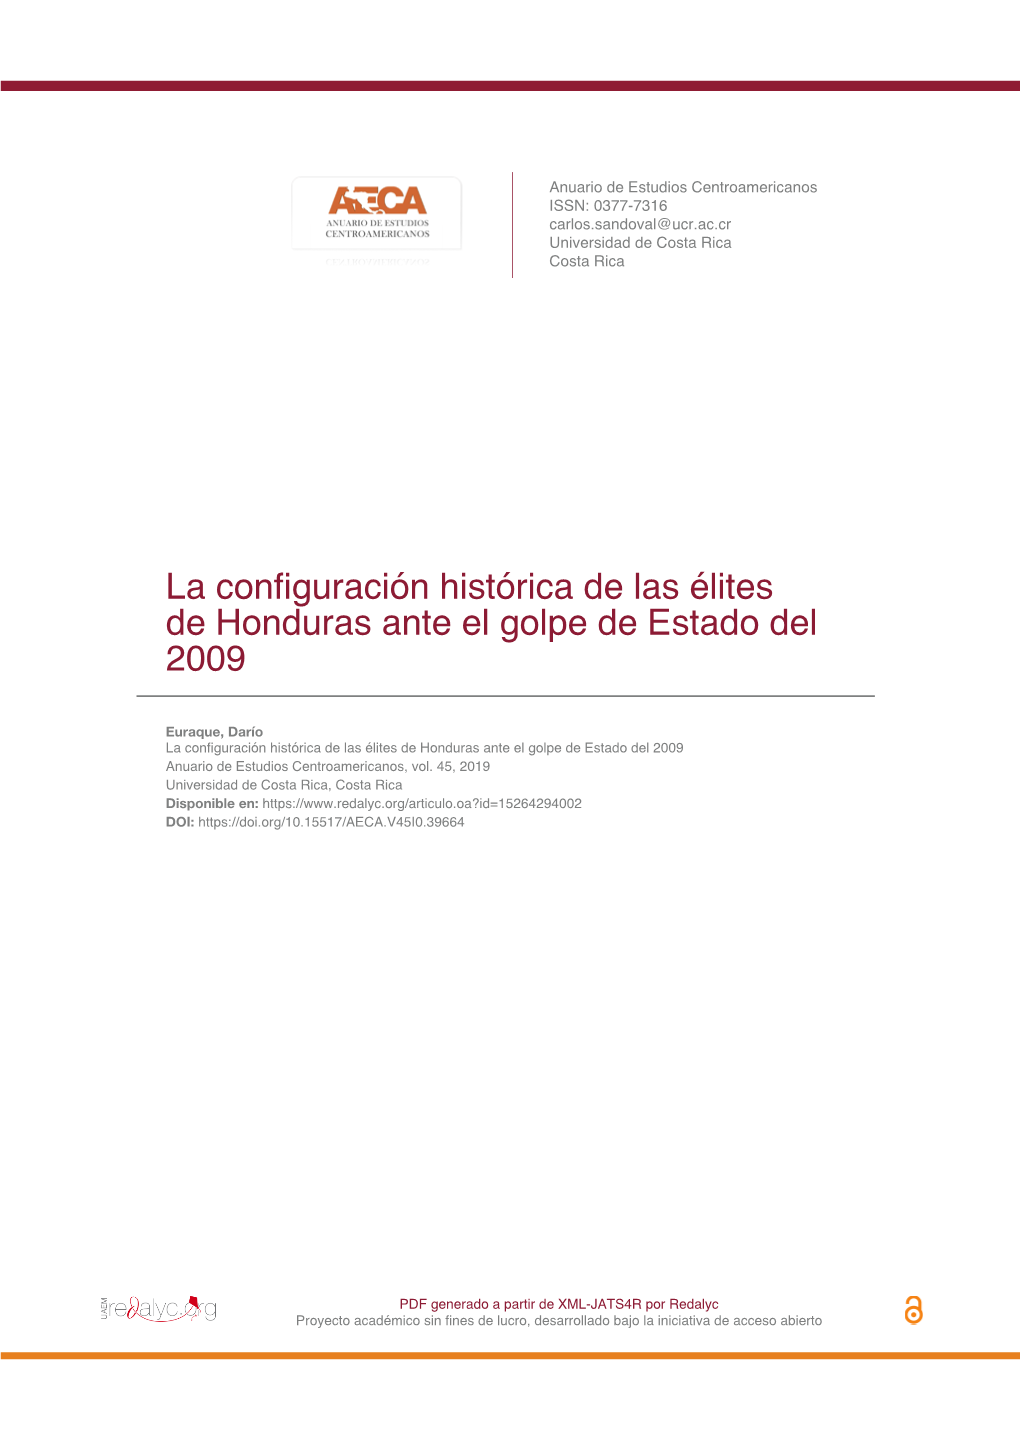 La Configuración Histórica De Las Élites De Honduras Ante El Golpe De Estado Del 2009